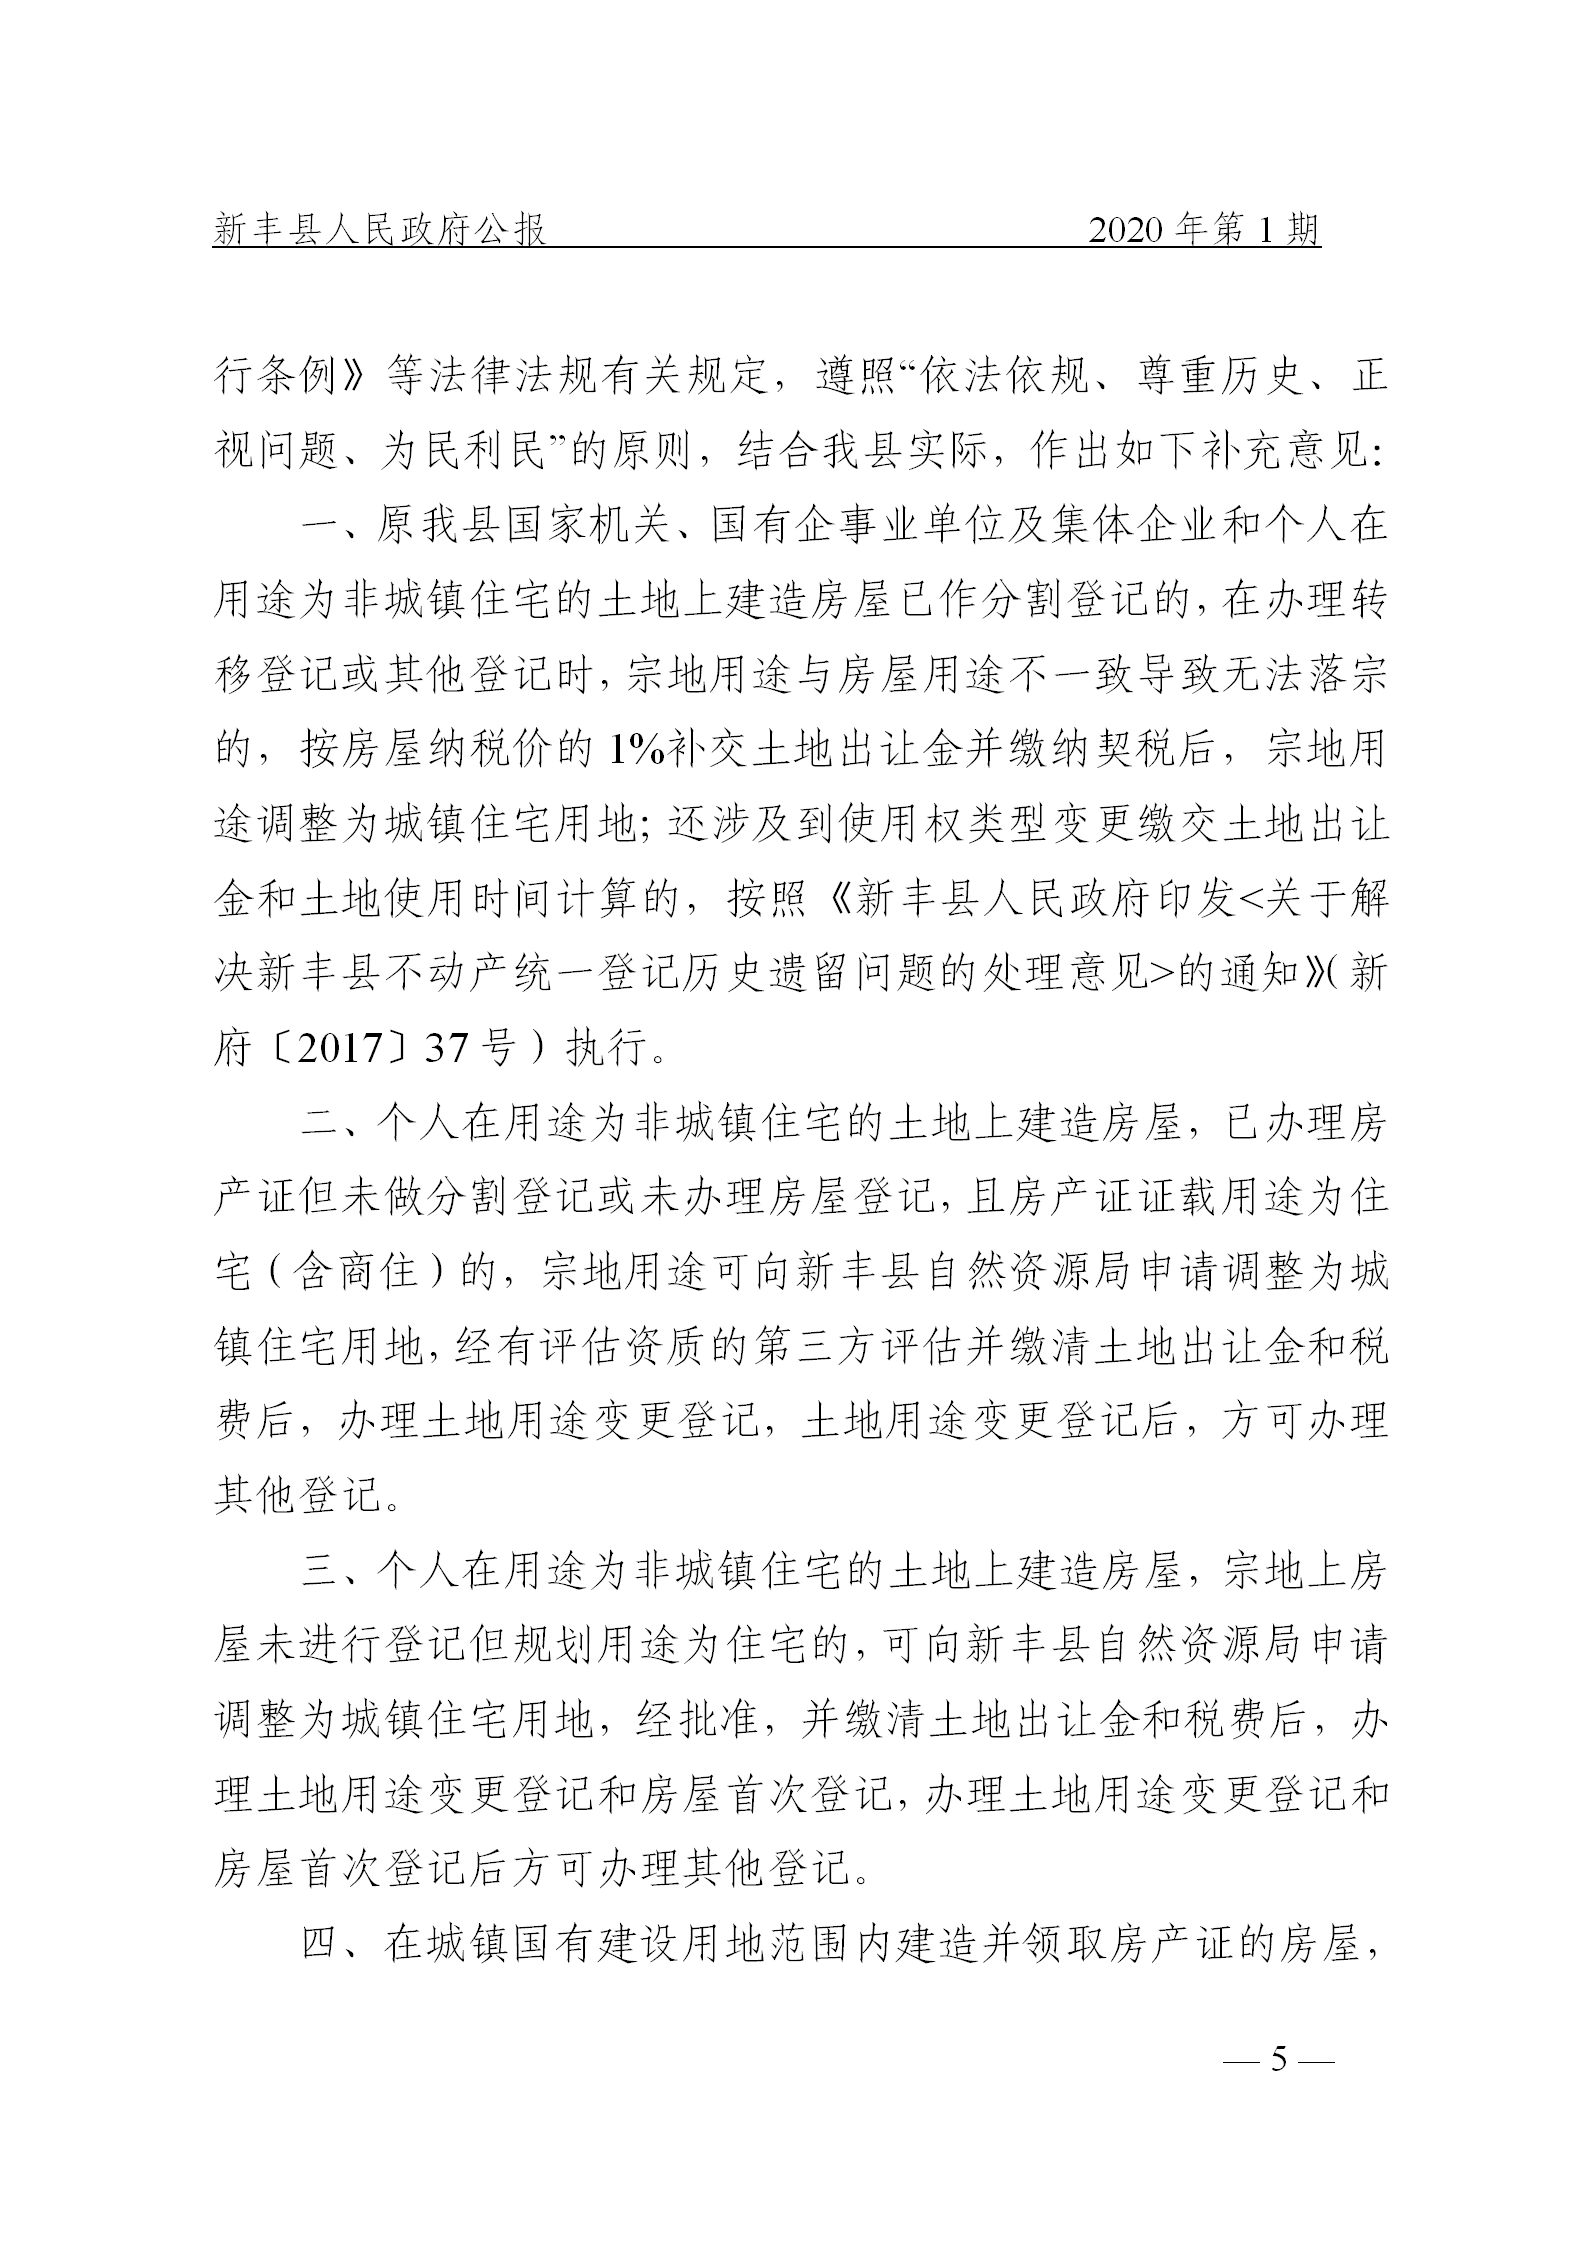 《新丰县人民政府公报》2020年第1期(1)_05.png